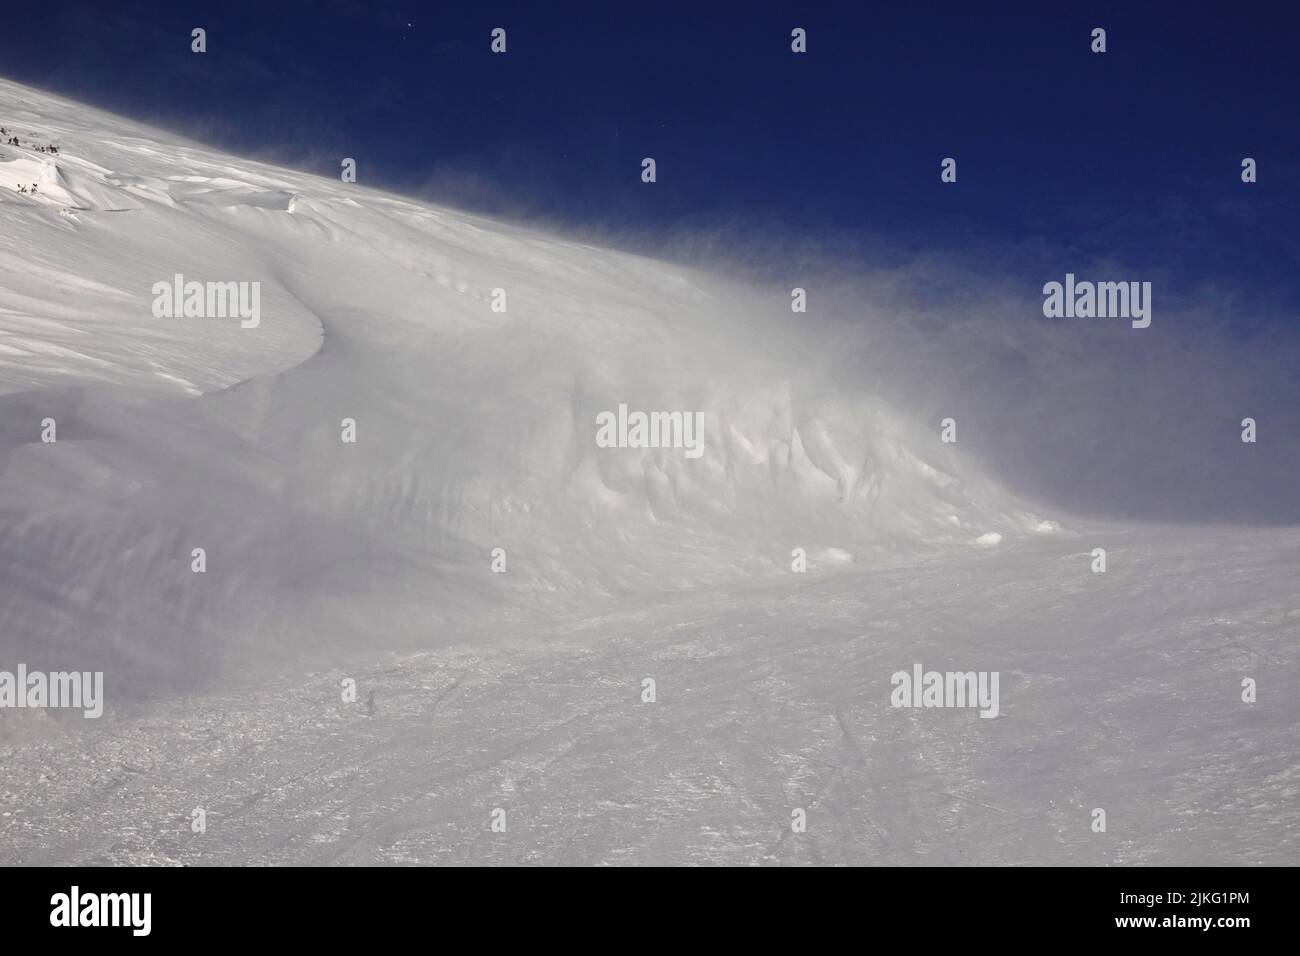 29.01.2022, Austria, Alta Austria, Obertraun - La nieve deriva en una ladera de montaña. 00S220129D103CAROEX.JPG [VERSIÓN DE MODELO: NO, PUBLICACIÓN DE PROPIEDAD: NO (C) Foto de stock